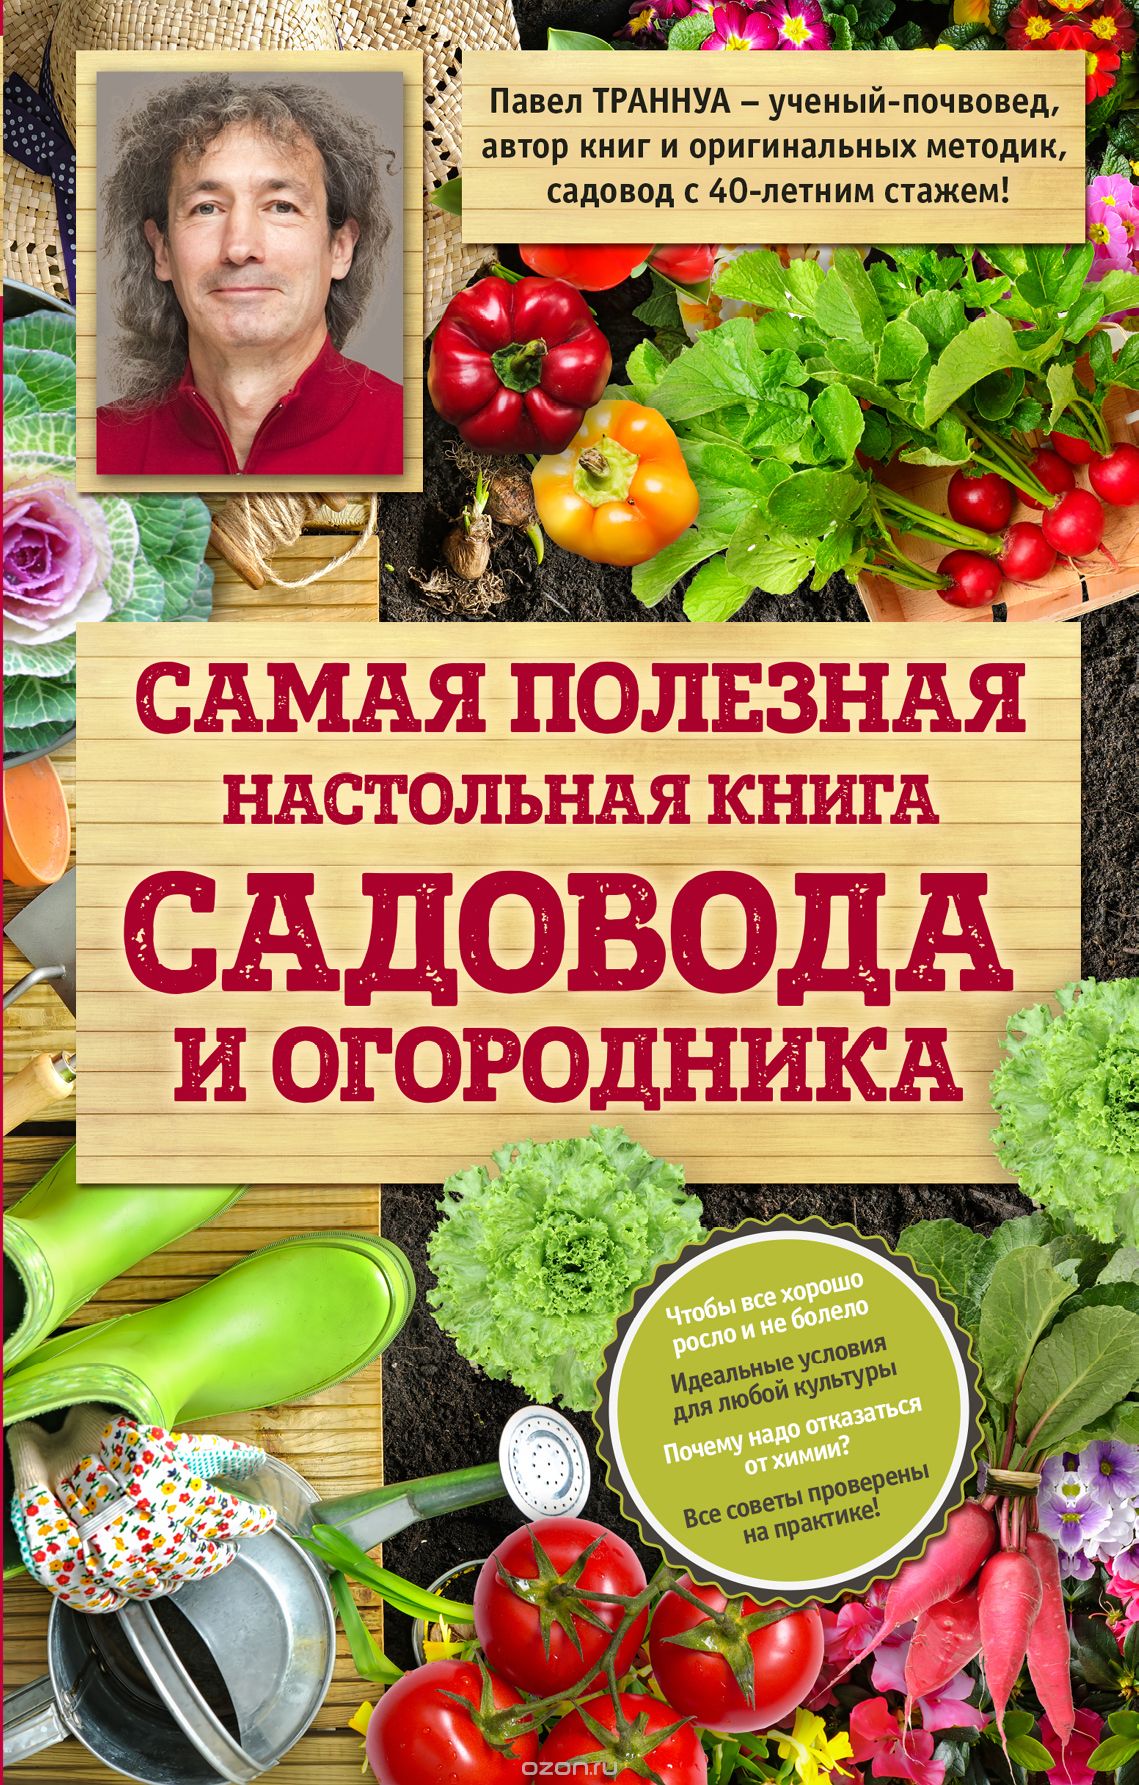 Скачать книгу "Самая полезная настольная книга садовода и огородника, Траннуа Павел Франкович"